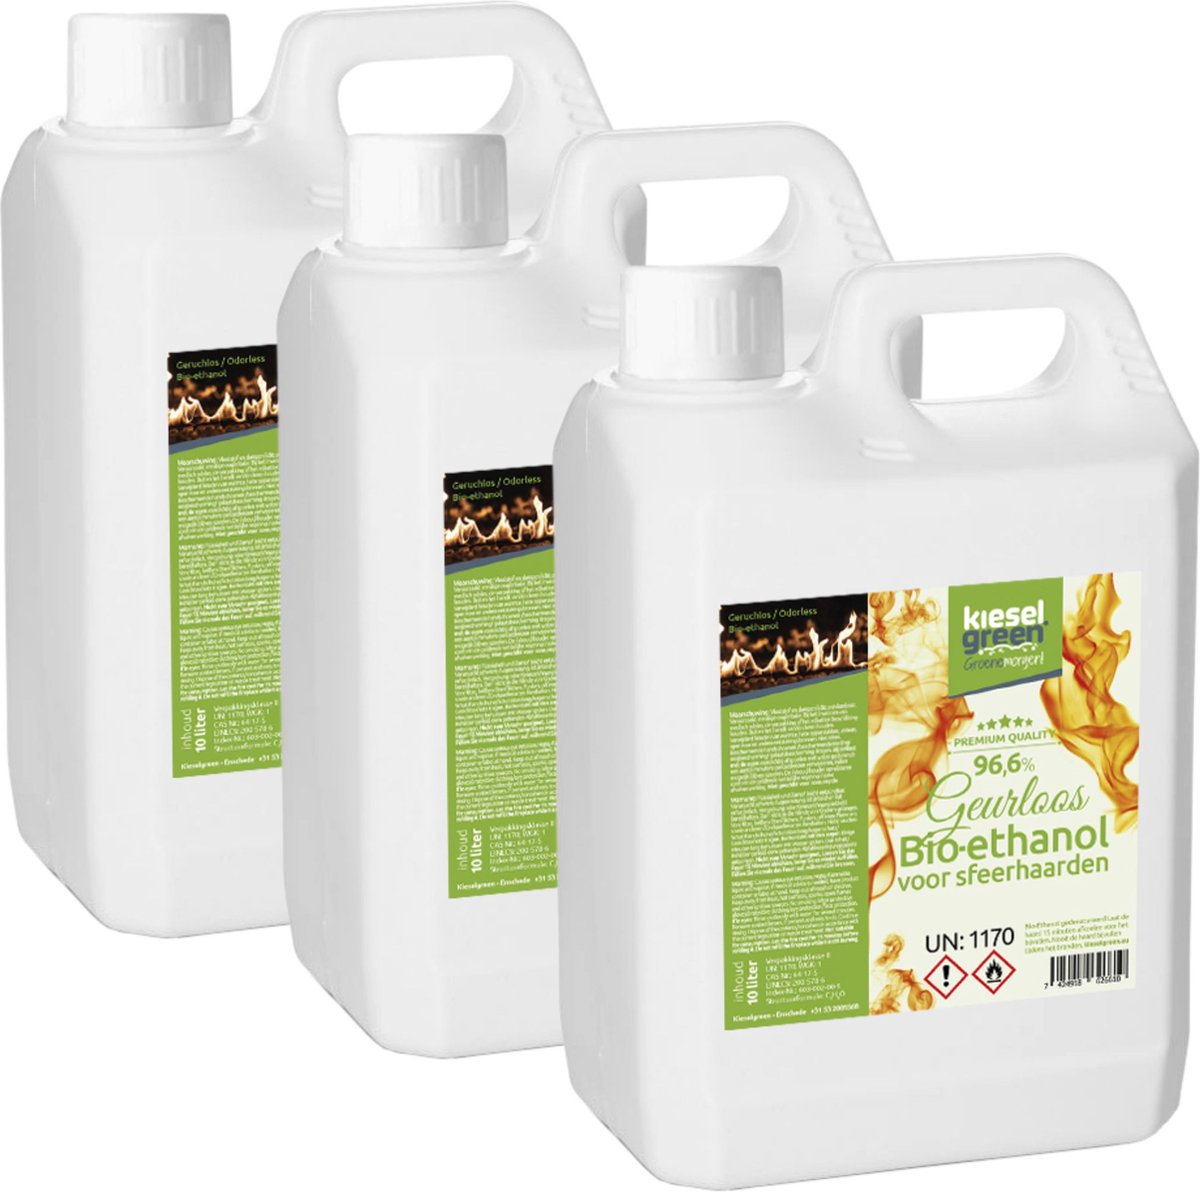 KieselGreen 30 Liter Bio-Ethanol Geurloos - Bioethanol 96.6%, Veilig voor Sfeerhaarden en Tafelhaarden, Milieuvriendelijk - Premium Kwaliteit Ethanol voor Binnen en Buiten